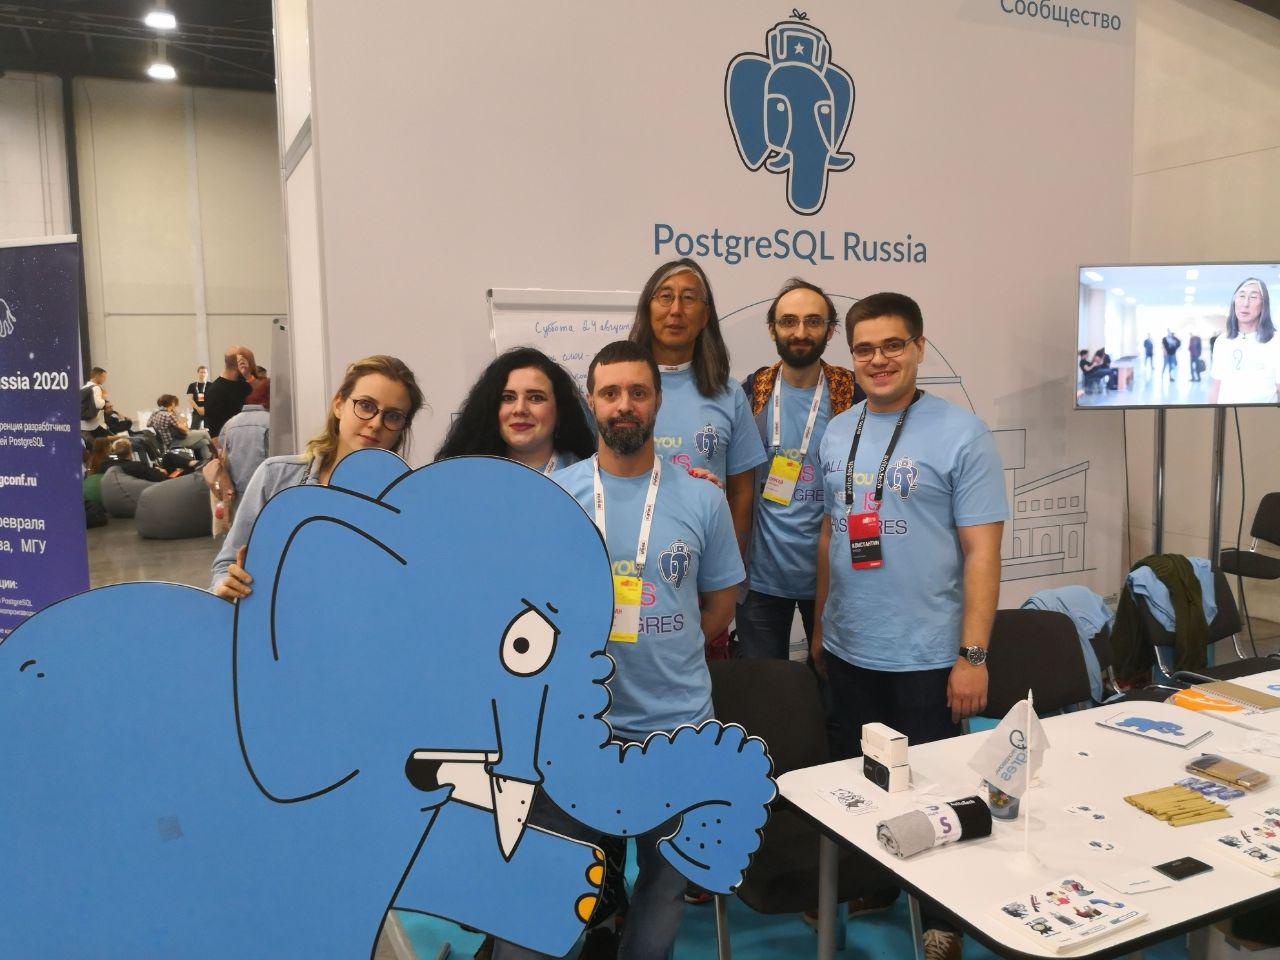 На протяжении всей выставки стенд «PostgreSQL в России» привлекал множество гостей, которые проверяли свои знания Postgres в интеллектуально-развлекательной игре, пробовали собрать трехмерный пазл, раскладывали пасьянс маджонг